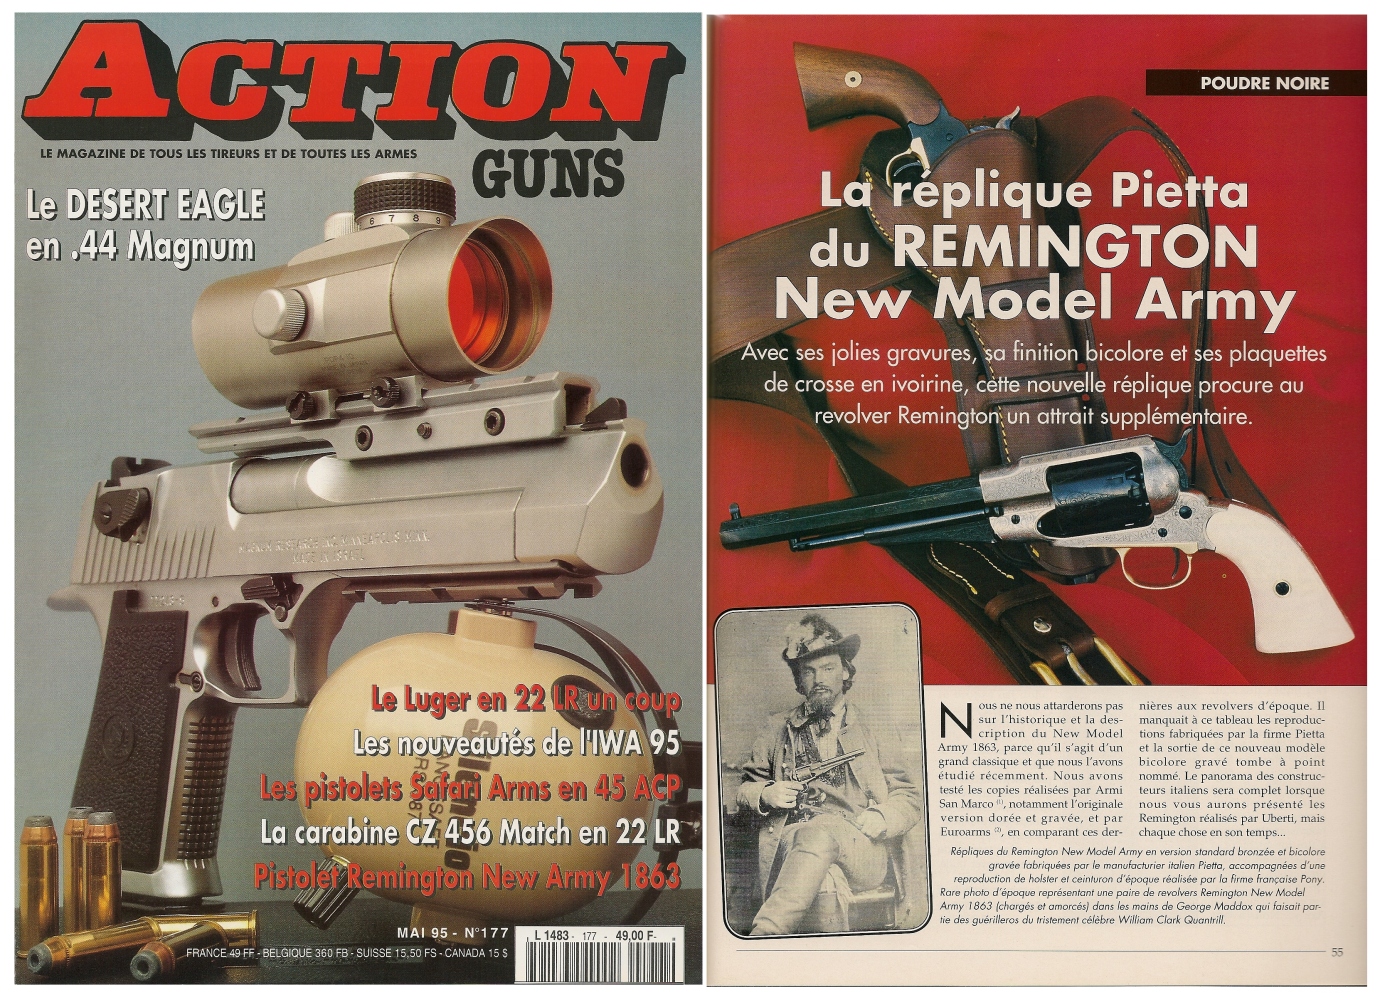 Le banc d'essai du revolver Remington New Model Army « Old Silver » a été publié sur 4 pages dans le magazine Action Guns n° 177 (mai 1995). 